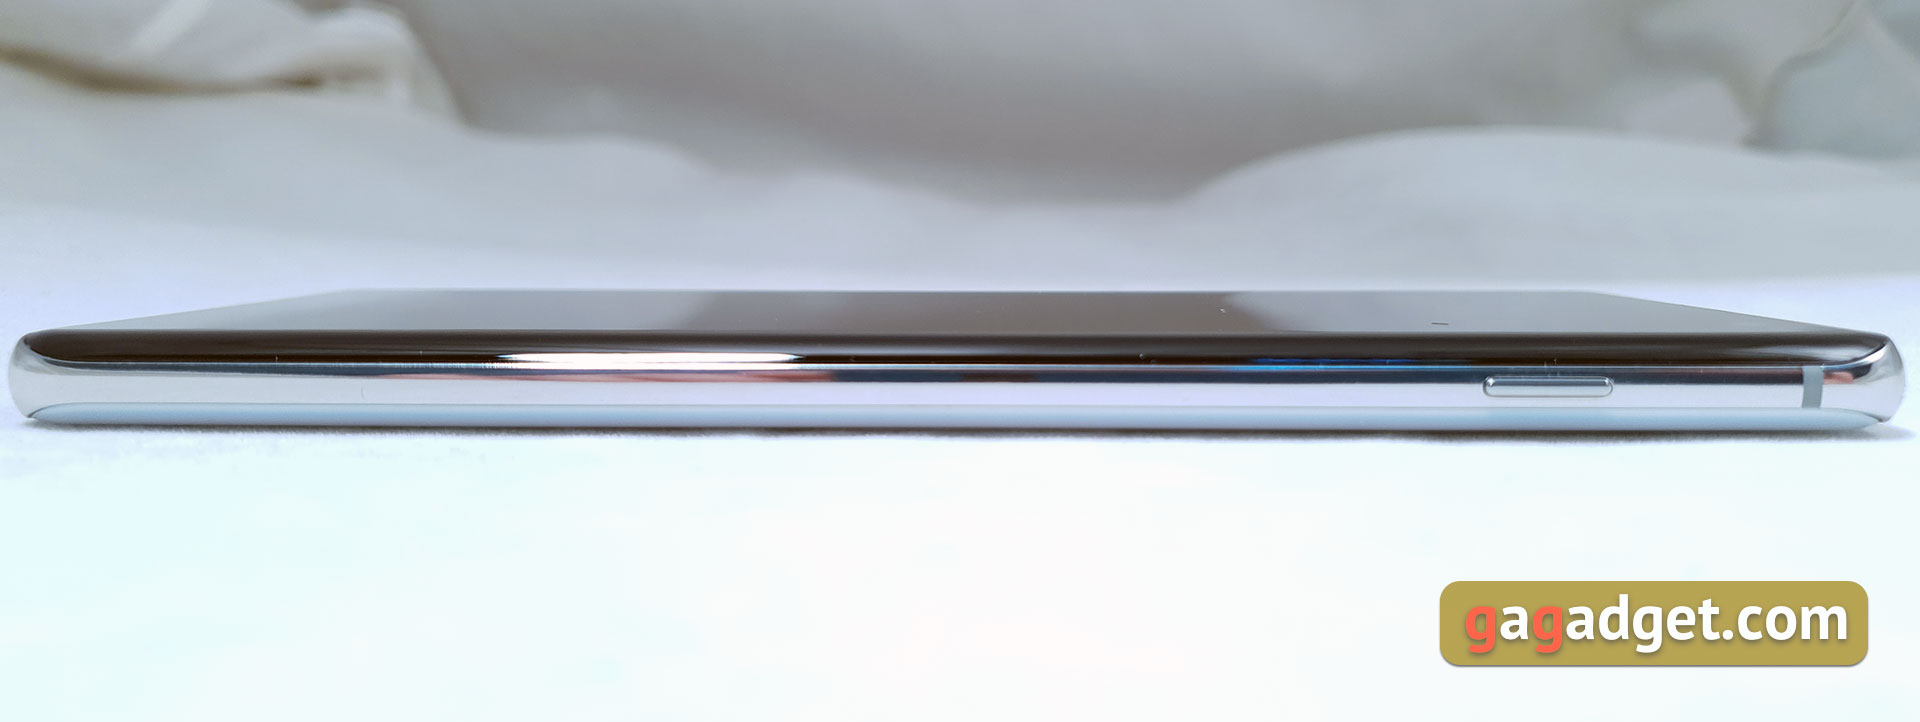 Recenzja Samsung Galaxy S10 +: jubilowy flagowy z pięciu kamerami-8